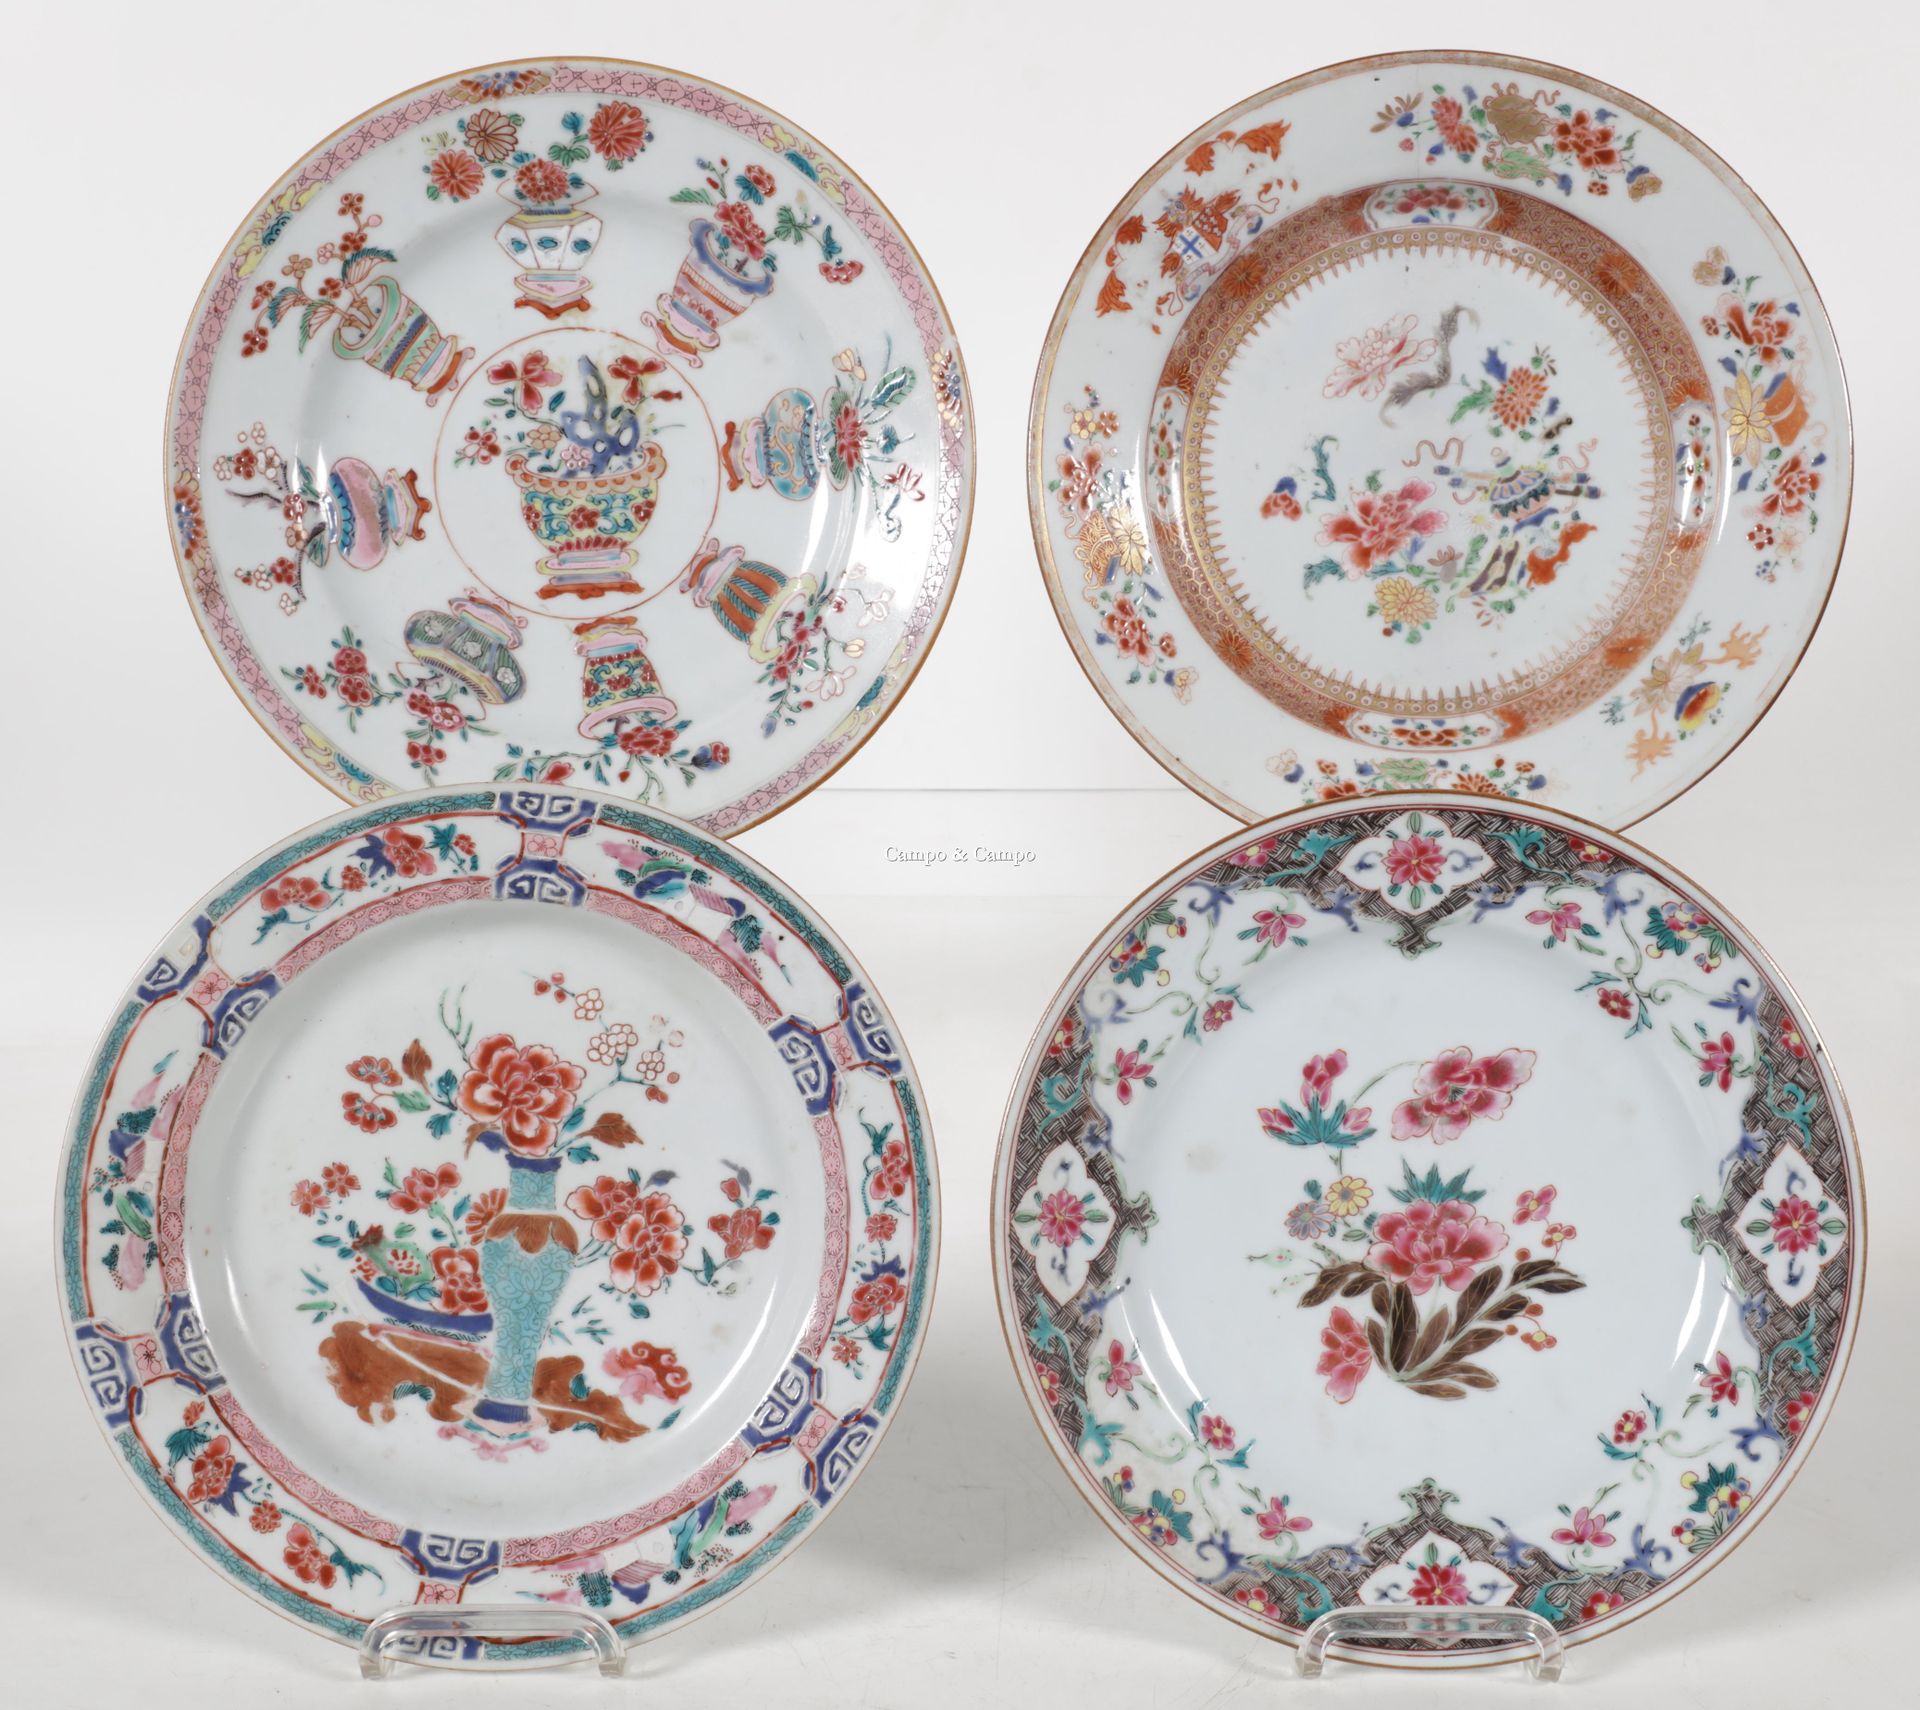 VARIA 四个中国瓷盘套装，带有不同的玫瑰花纹装饰
Lot van vier Chinees porseleinen borden met verschill&hellip;